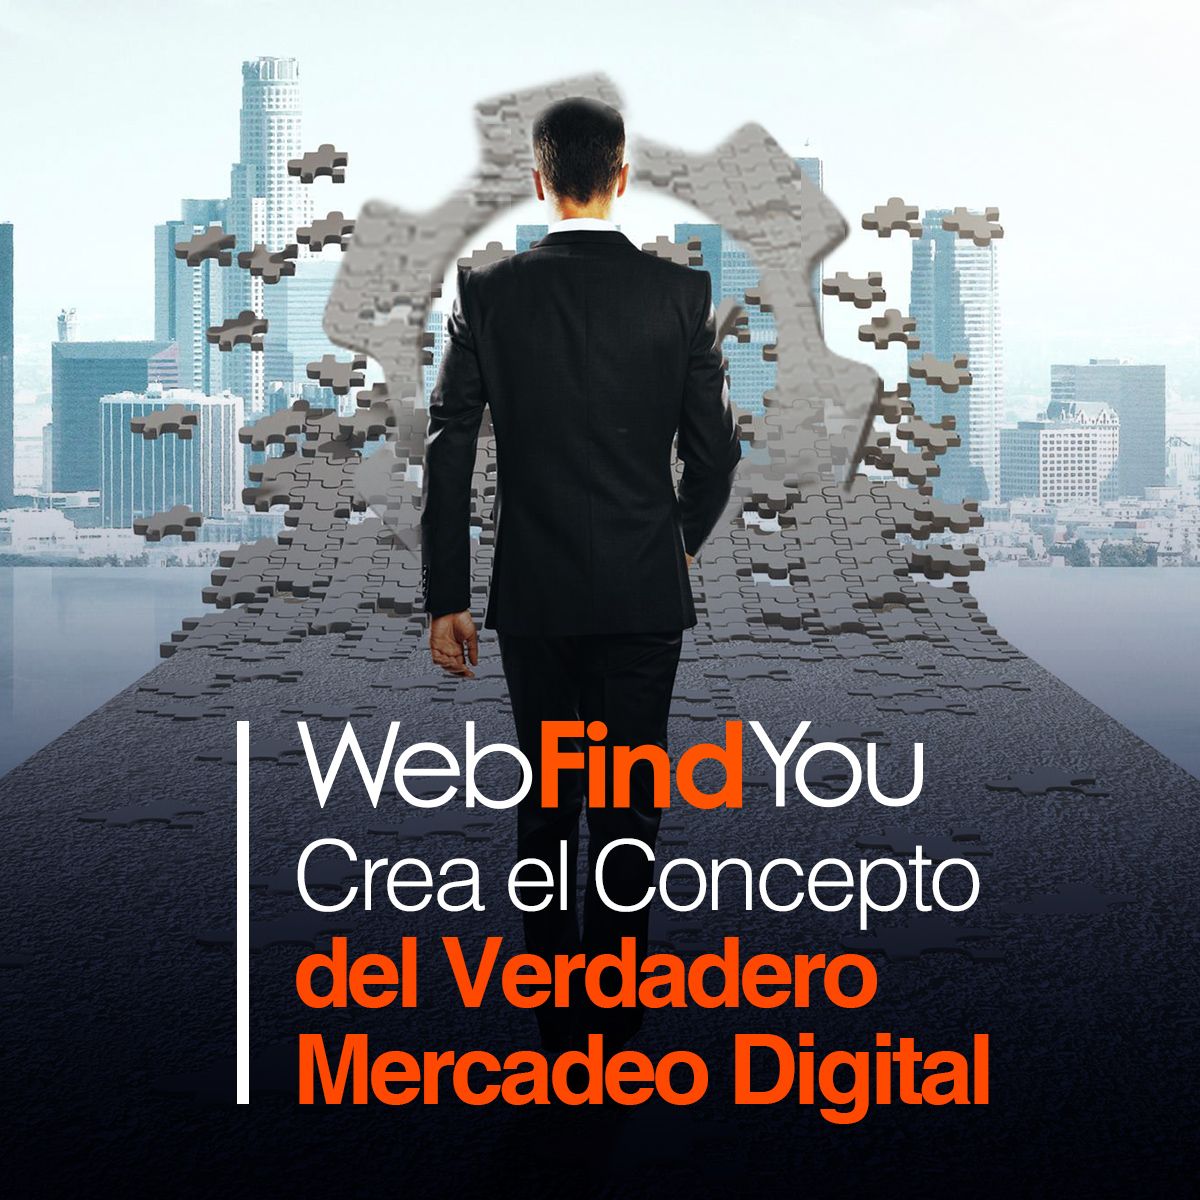 WebFindYou Crea el Concepto del Verdadero Mercadeo Digital